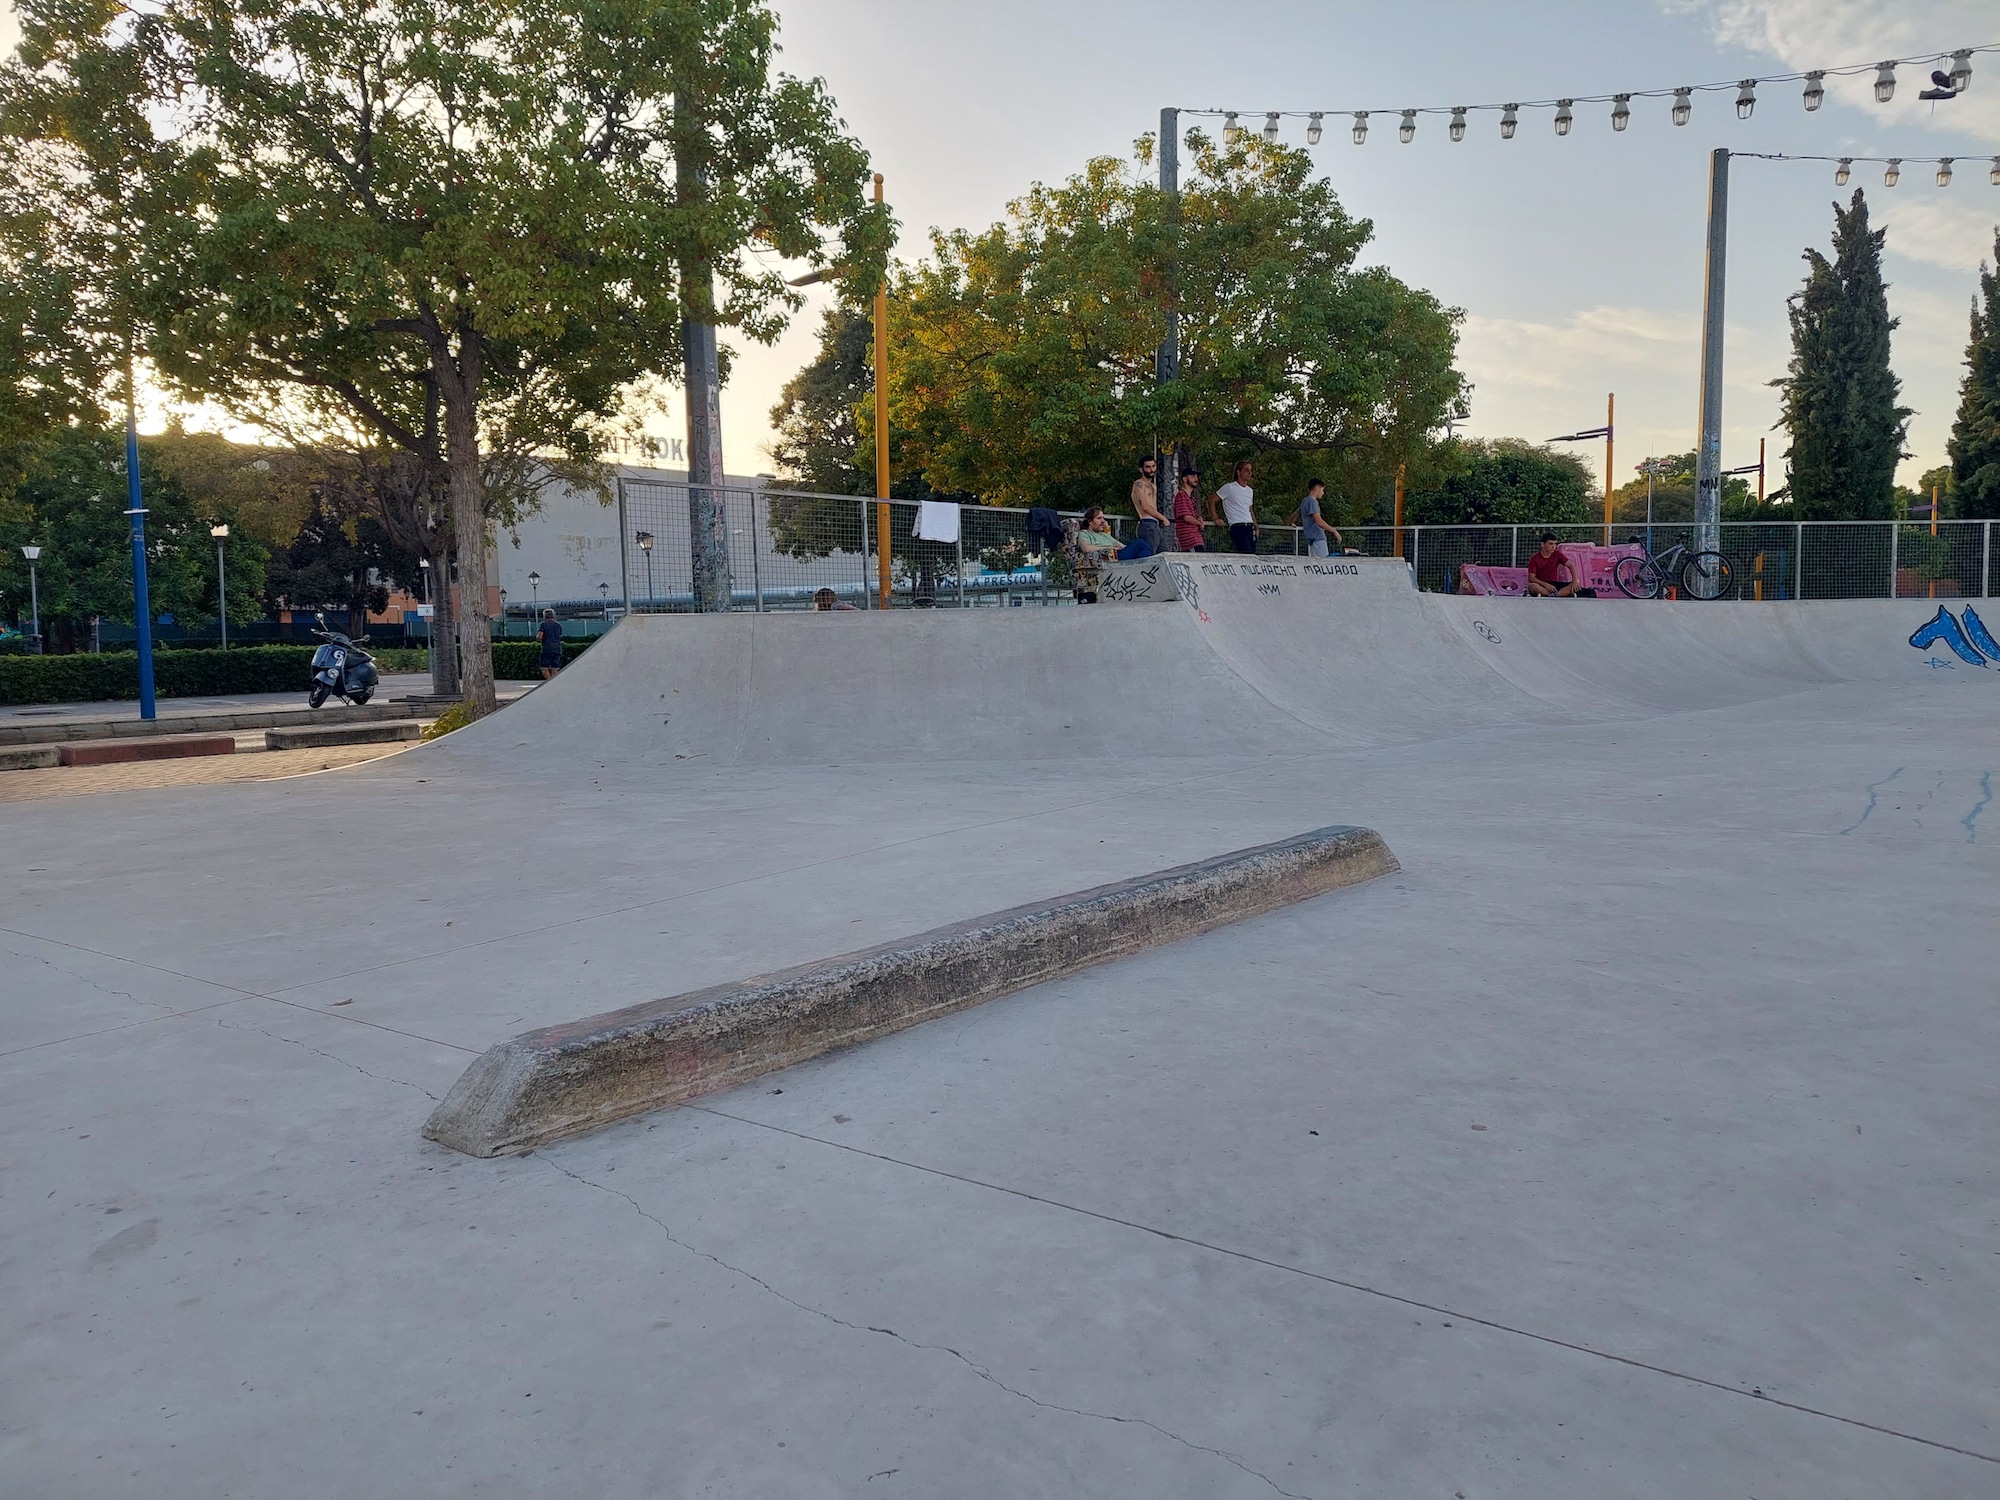 Torrent skatepark